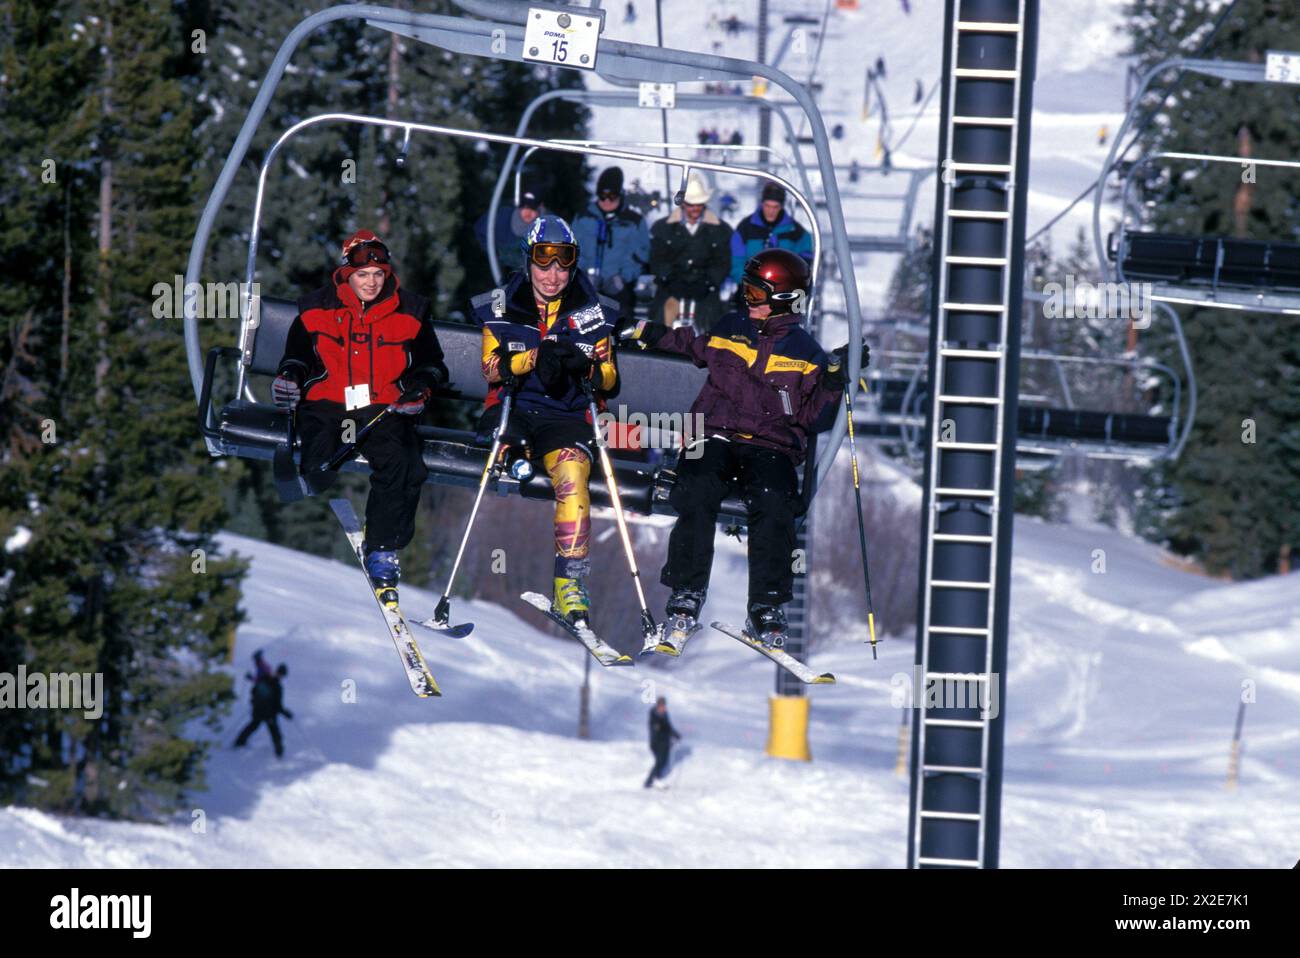 Behinderte Abfahrtsskifahrer Allison Jones, Training im Winter Park Resort, Colorado-Reiten Sessellift mit anderen behinderten Skifahrern Stockfoto